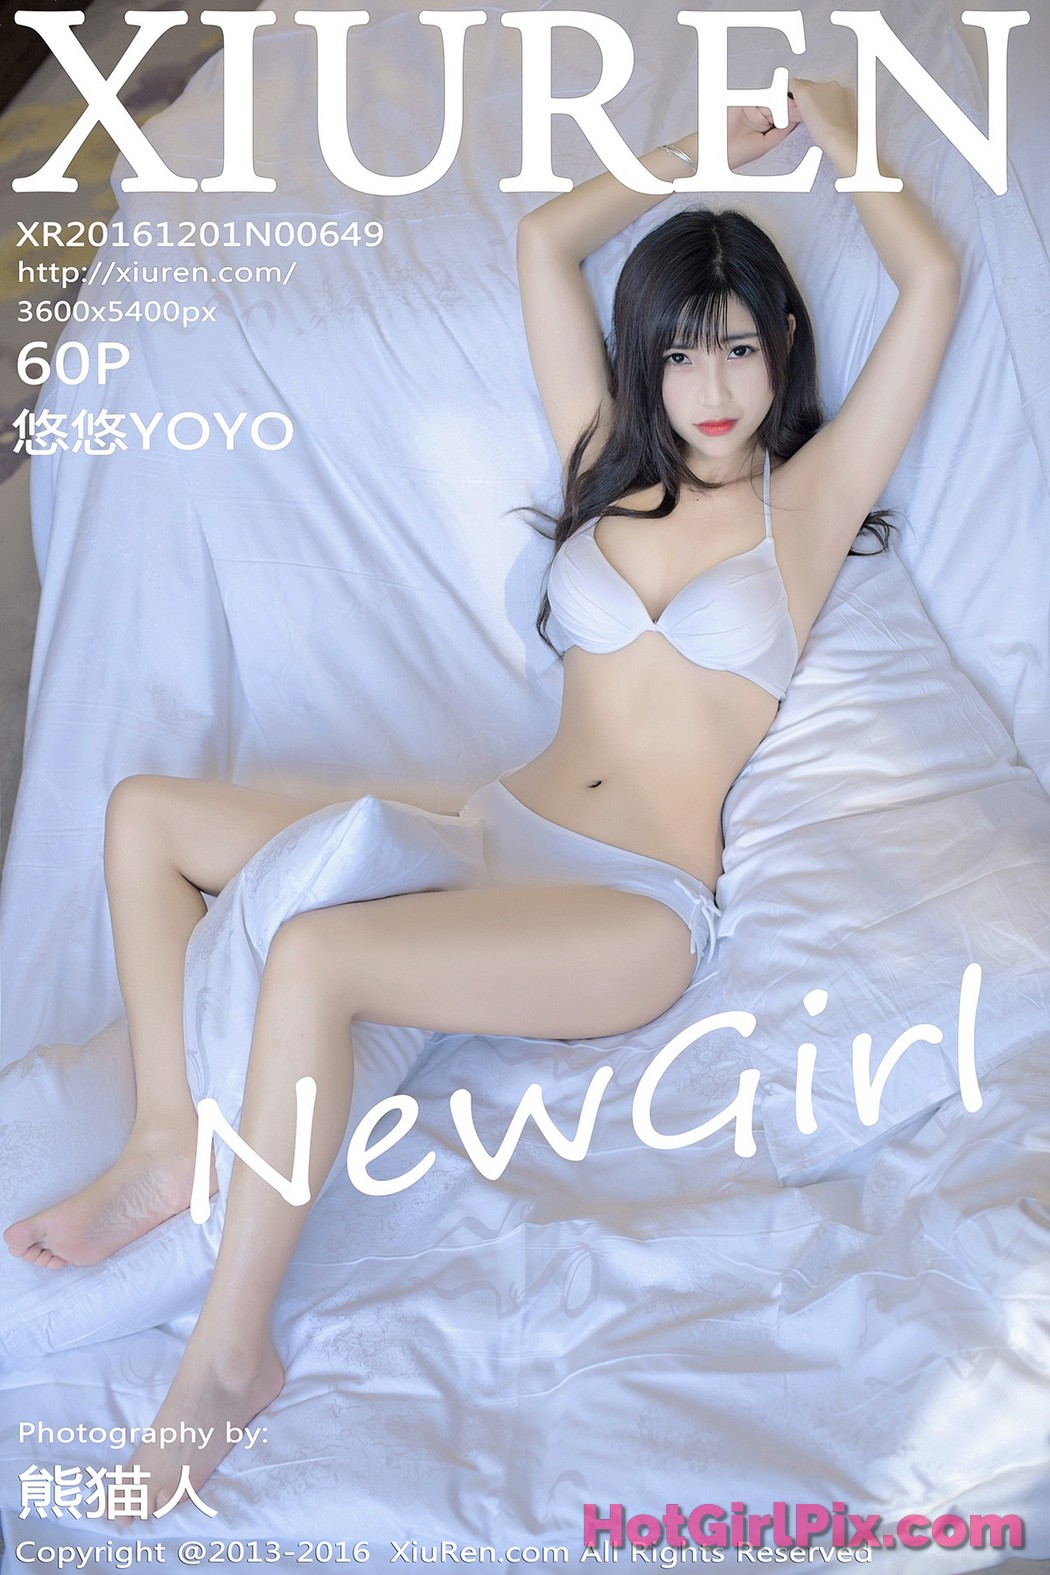 [XIUREN] No.649 You You 悠悠YOYO Cover Photo